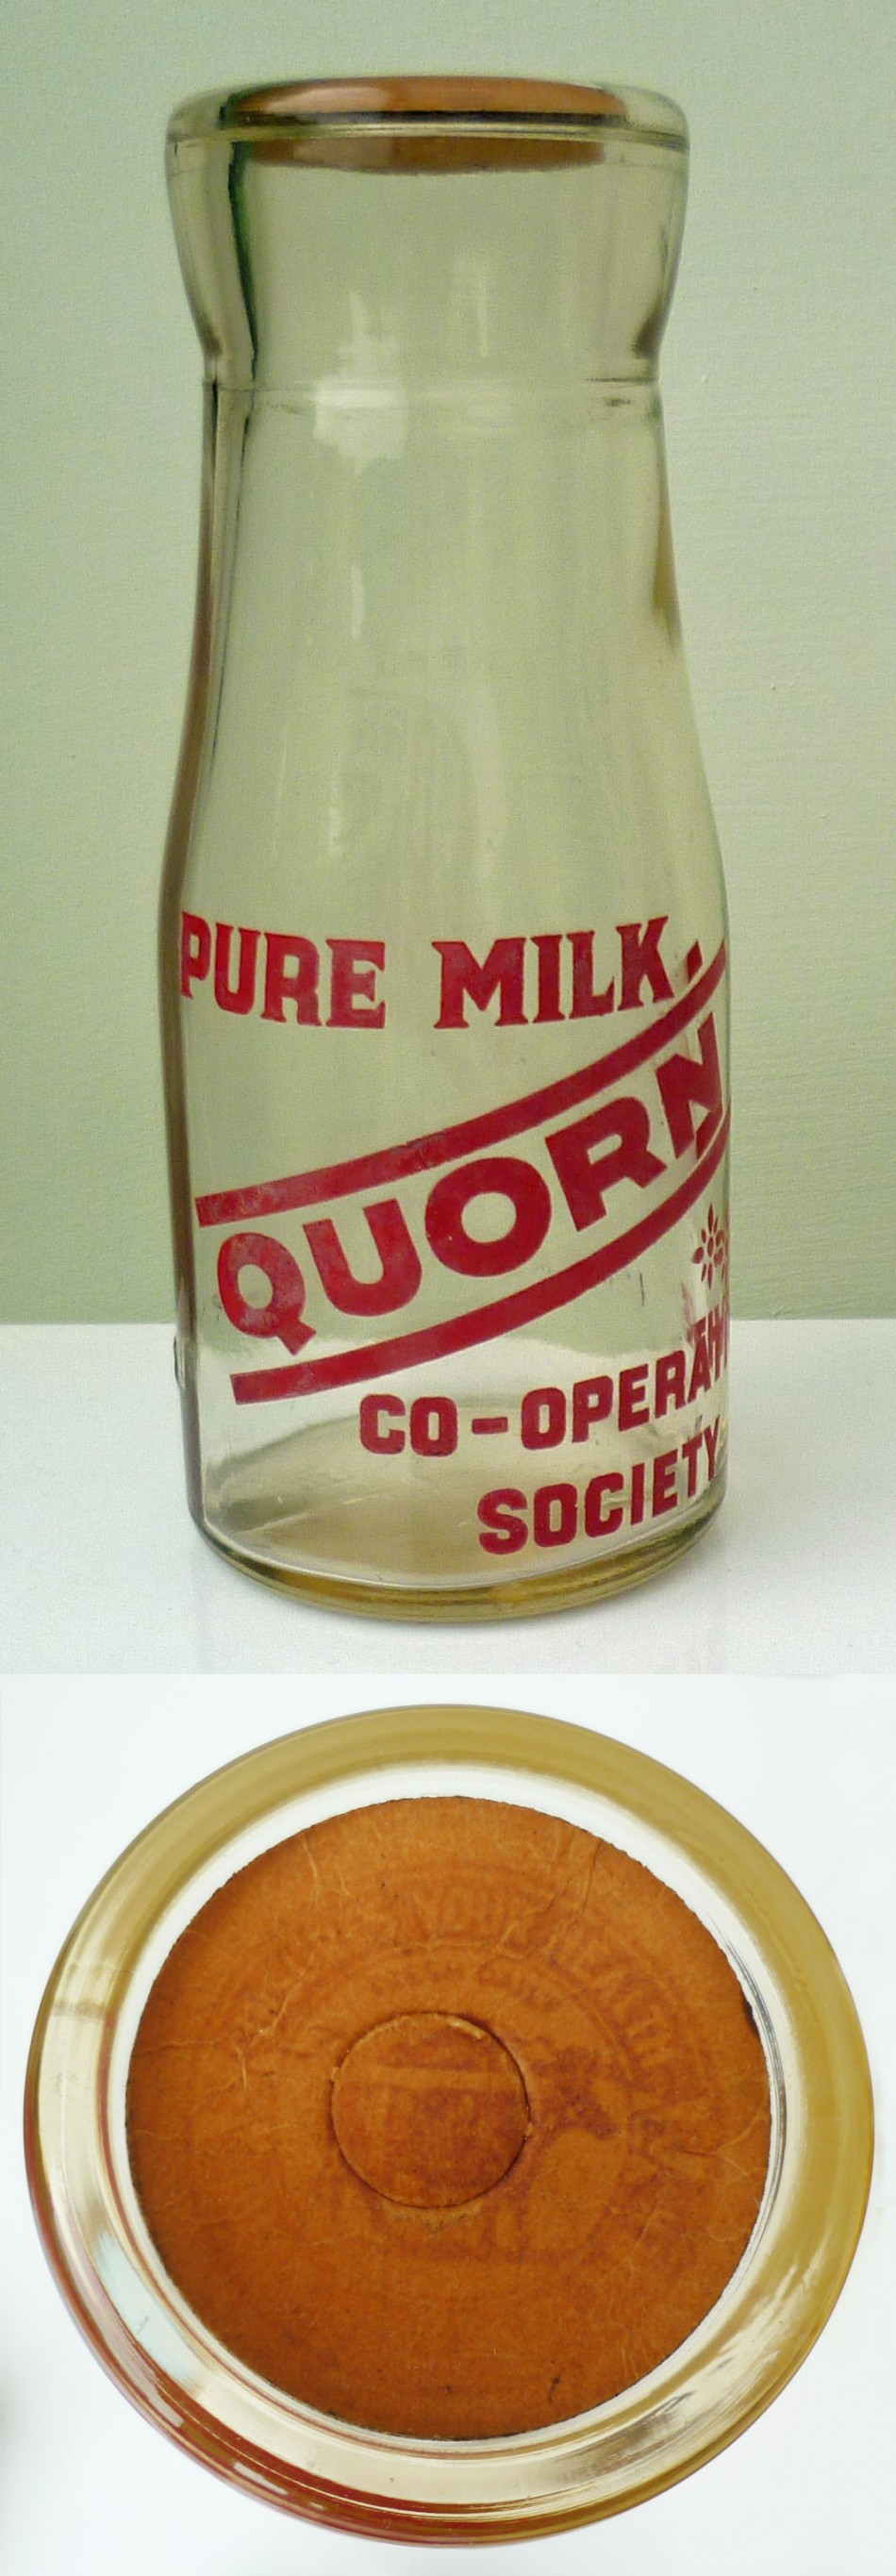 Quorn Co-op milk bottle